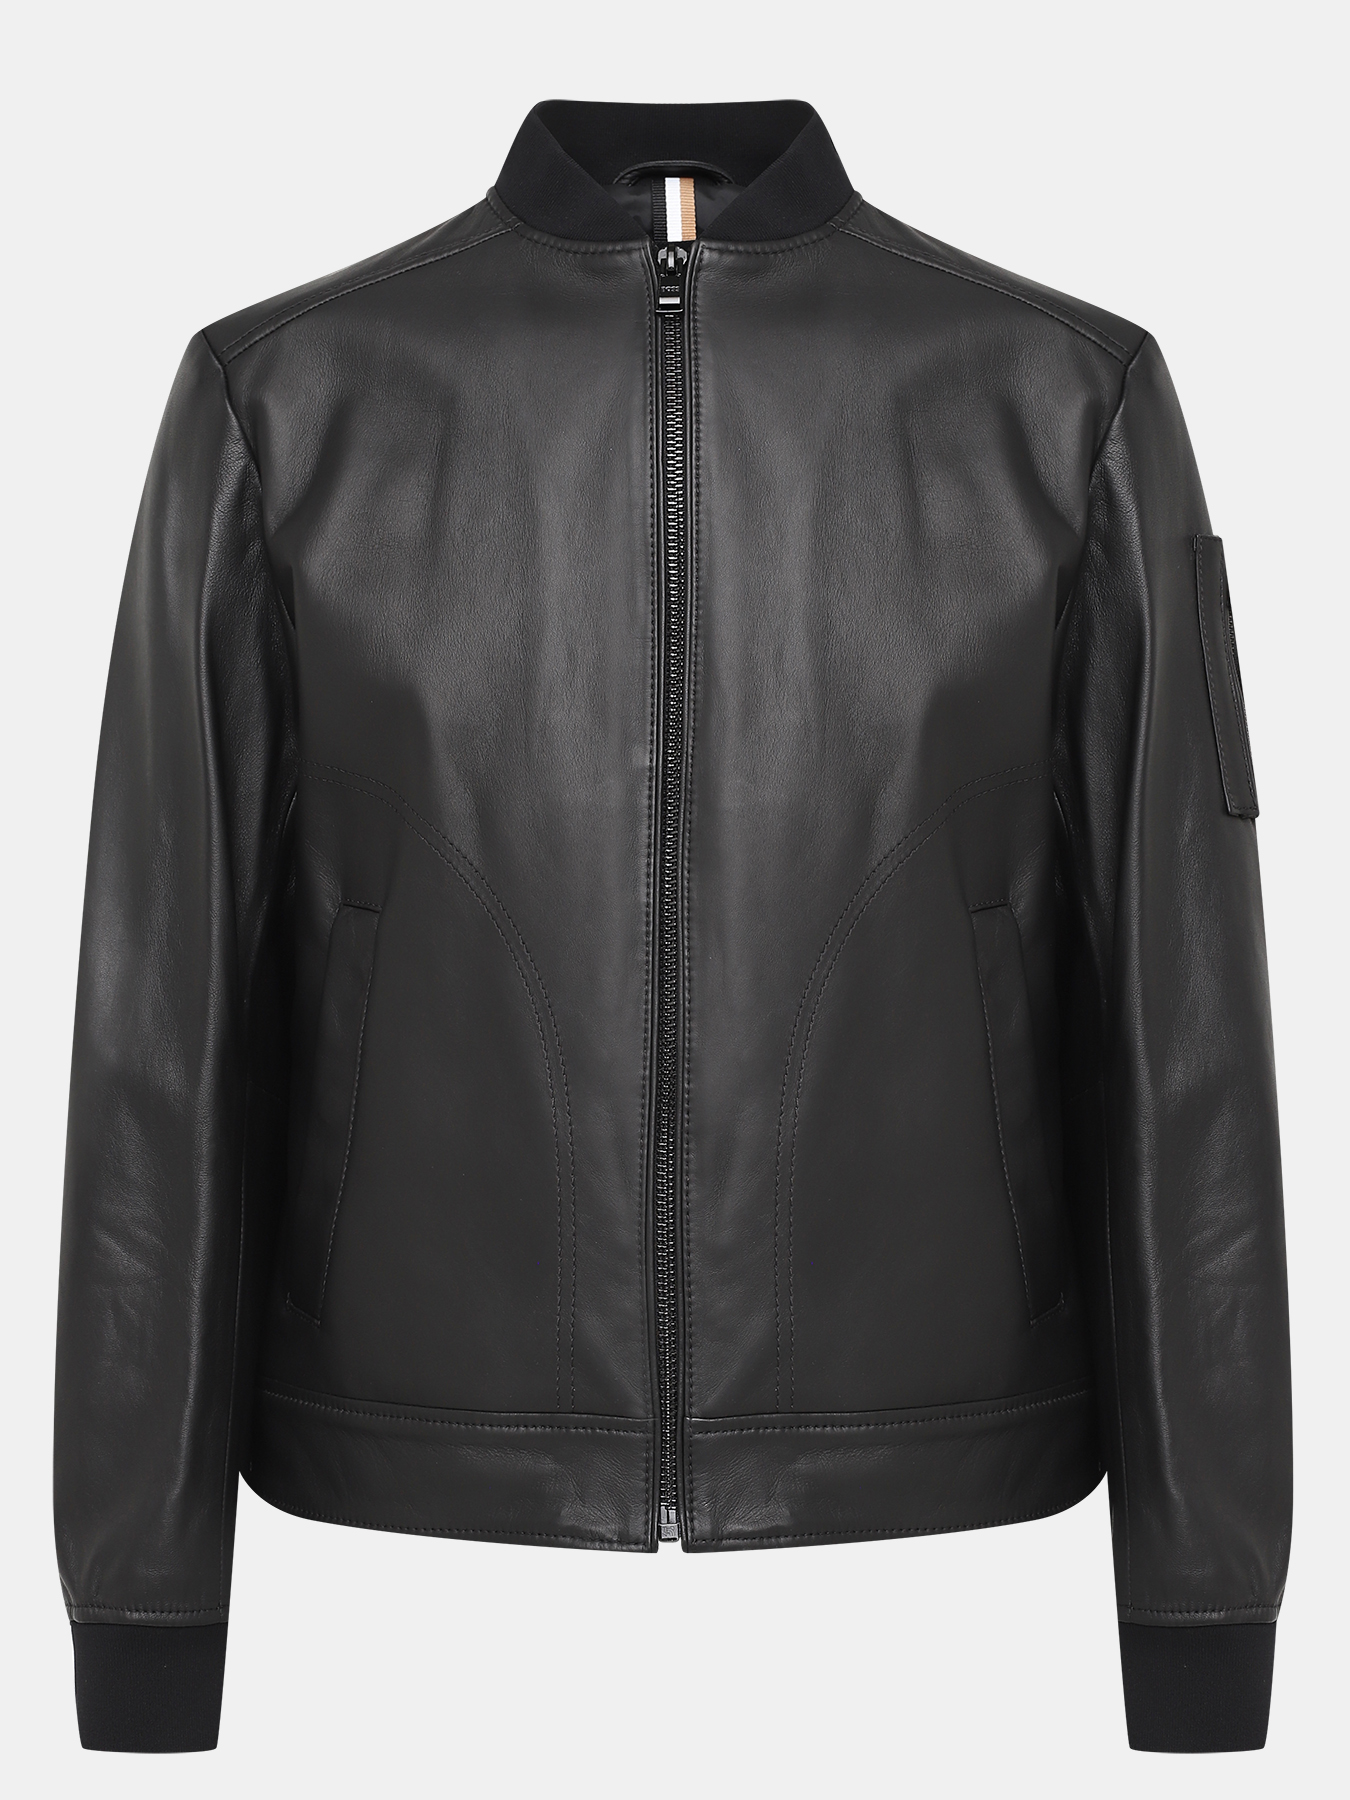 Кожаная куртка Malba BOSS 420438-027, цвет черный, размер 52